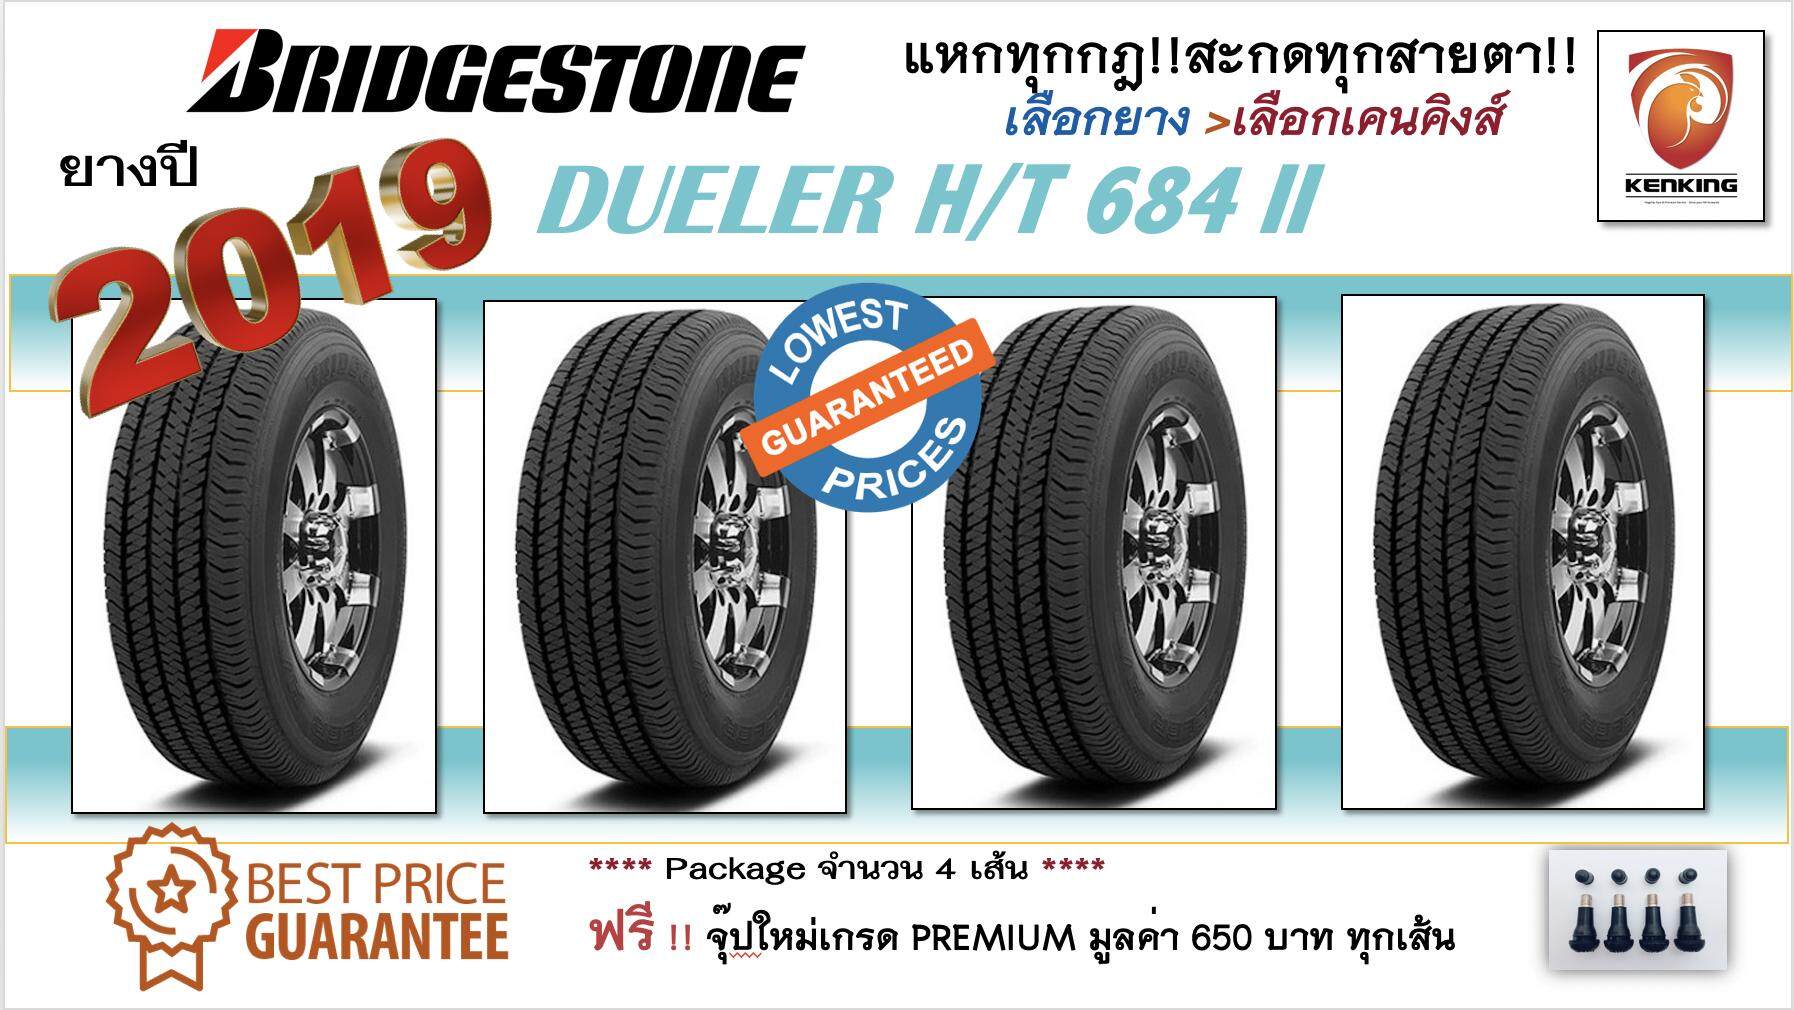 ประกันภัย รถยนต์ แบบ ผ่อน ได้ เลย Bridgestone 265/60 R18 ยางปี 19 DUELER H/T 684 II (Made in Thailand)  จำนวน 4 เส้น (ยางใหม่ ไร้ตำหนิ !! 100% BEST QUALITY)